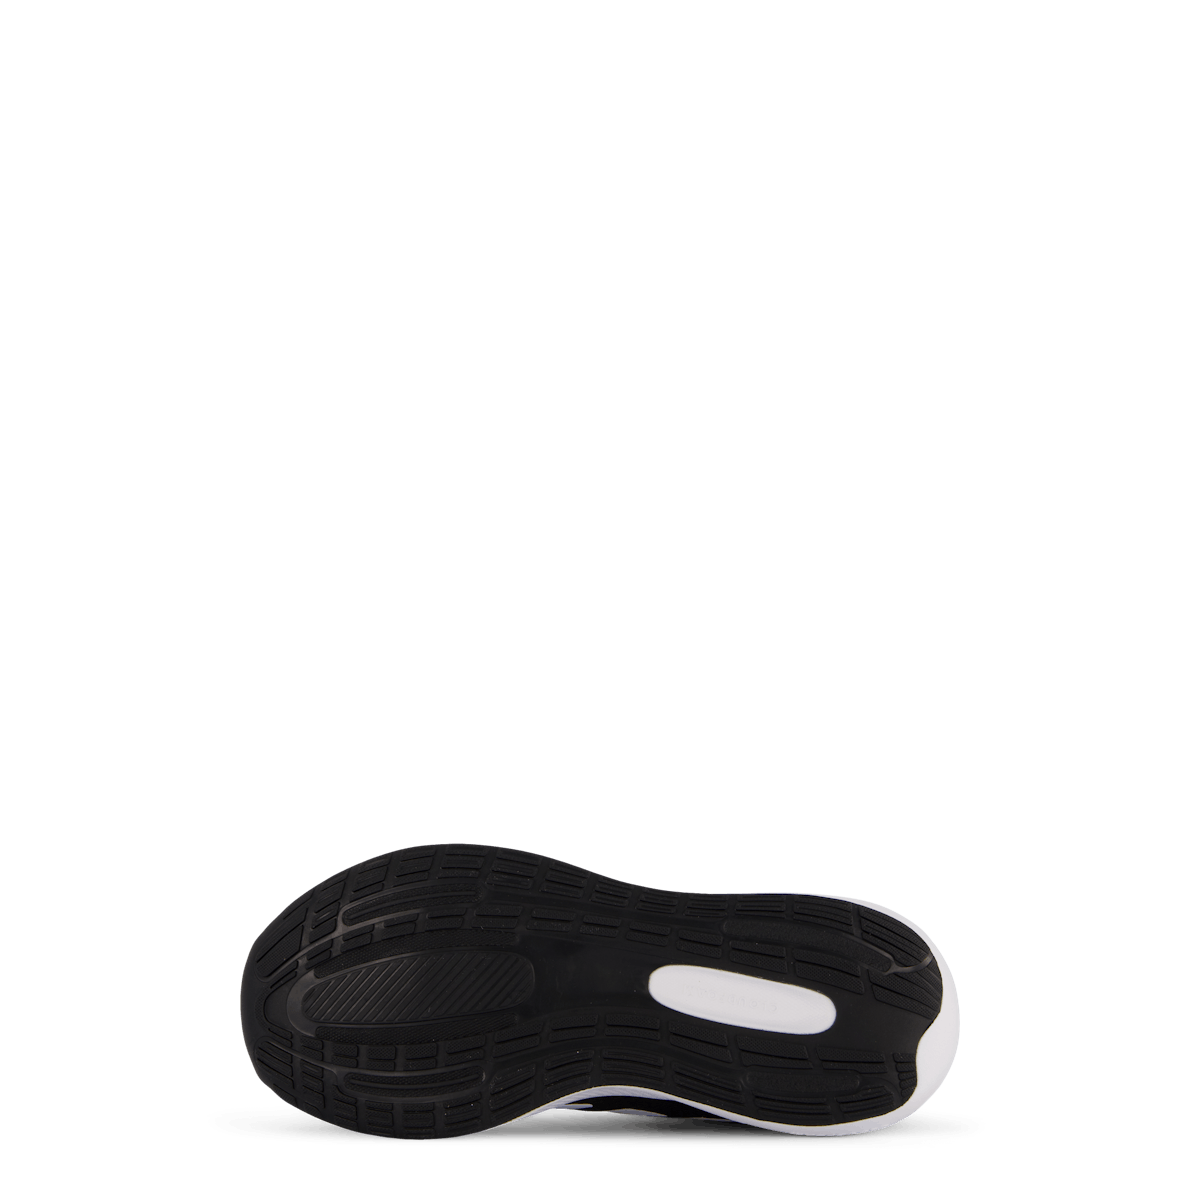 RunFalcon 3 Lace Shoes Core Black / Cloud White / Core Black